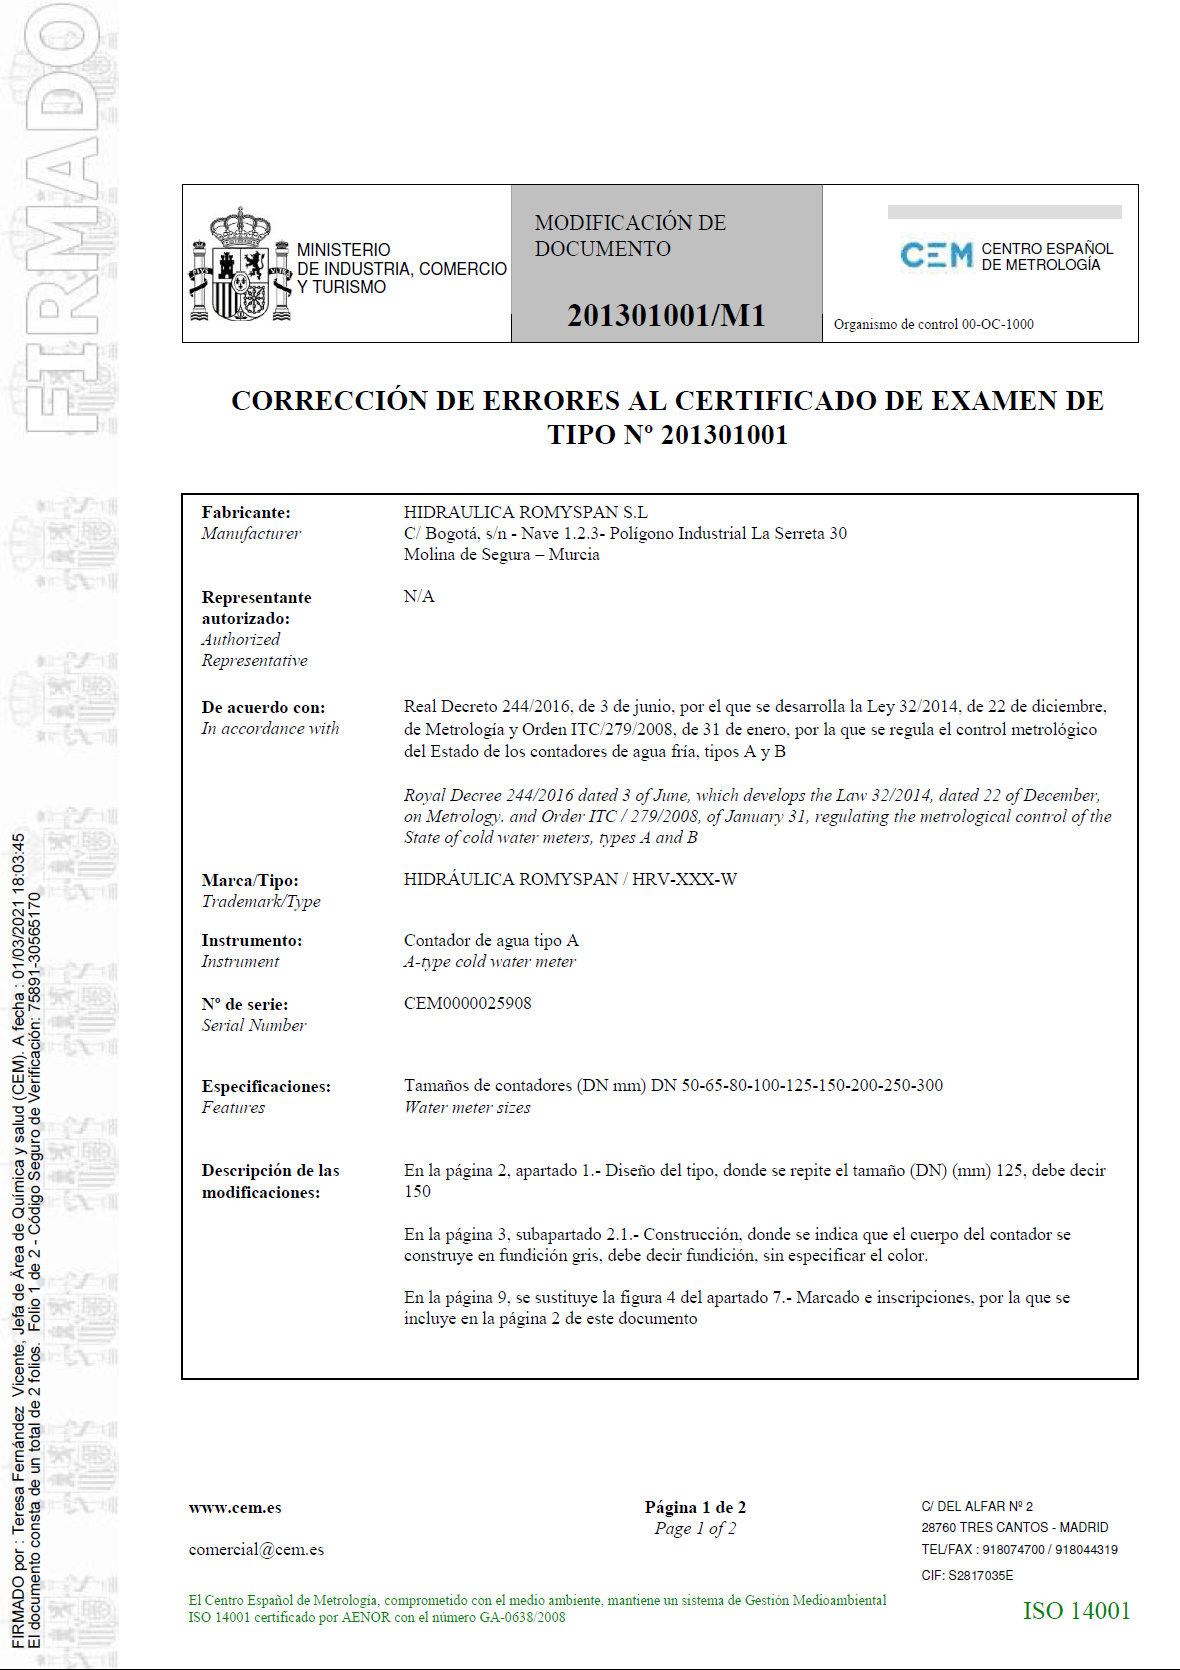 Corrección de errores al certificado de examen de tipo nº 201301001/M1 